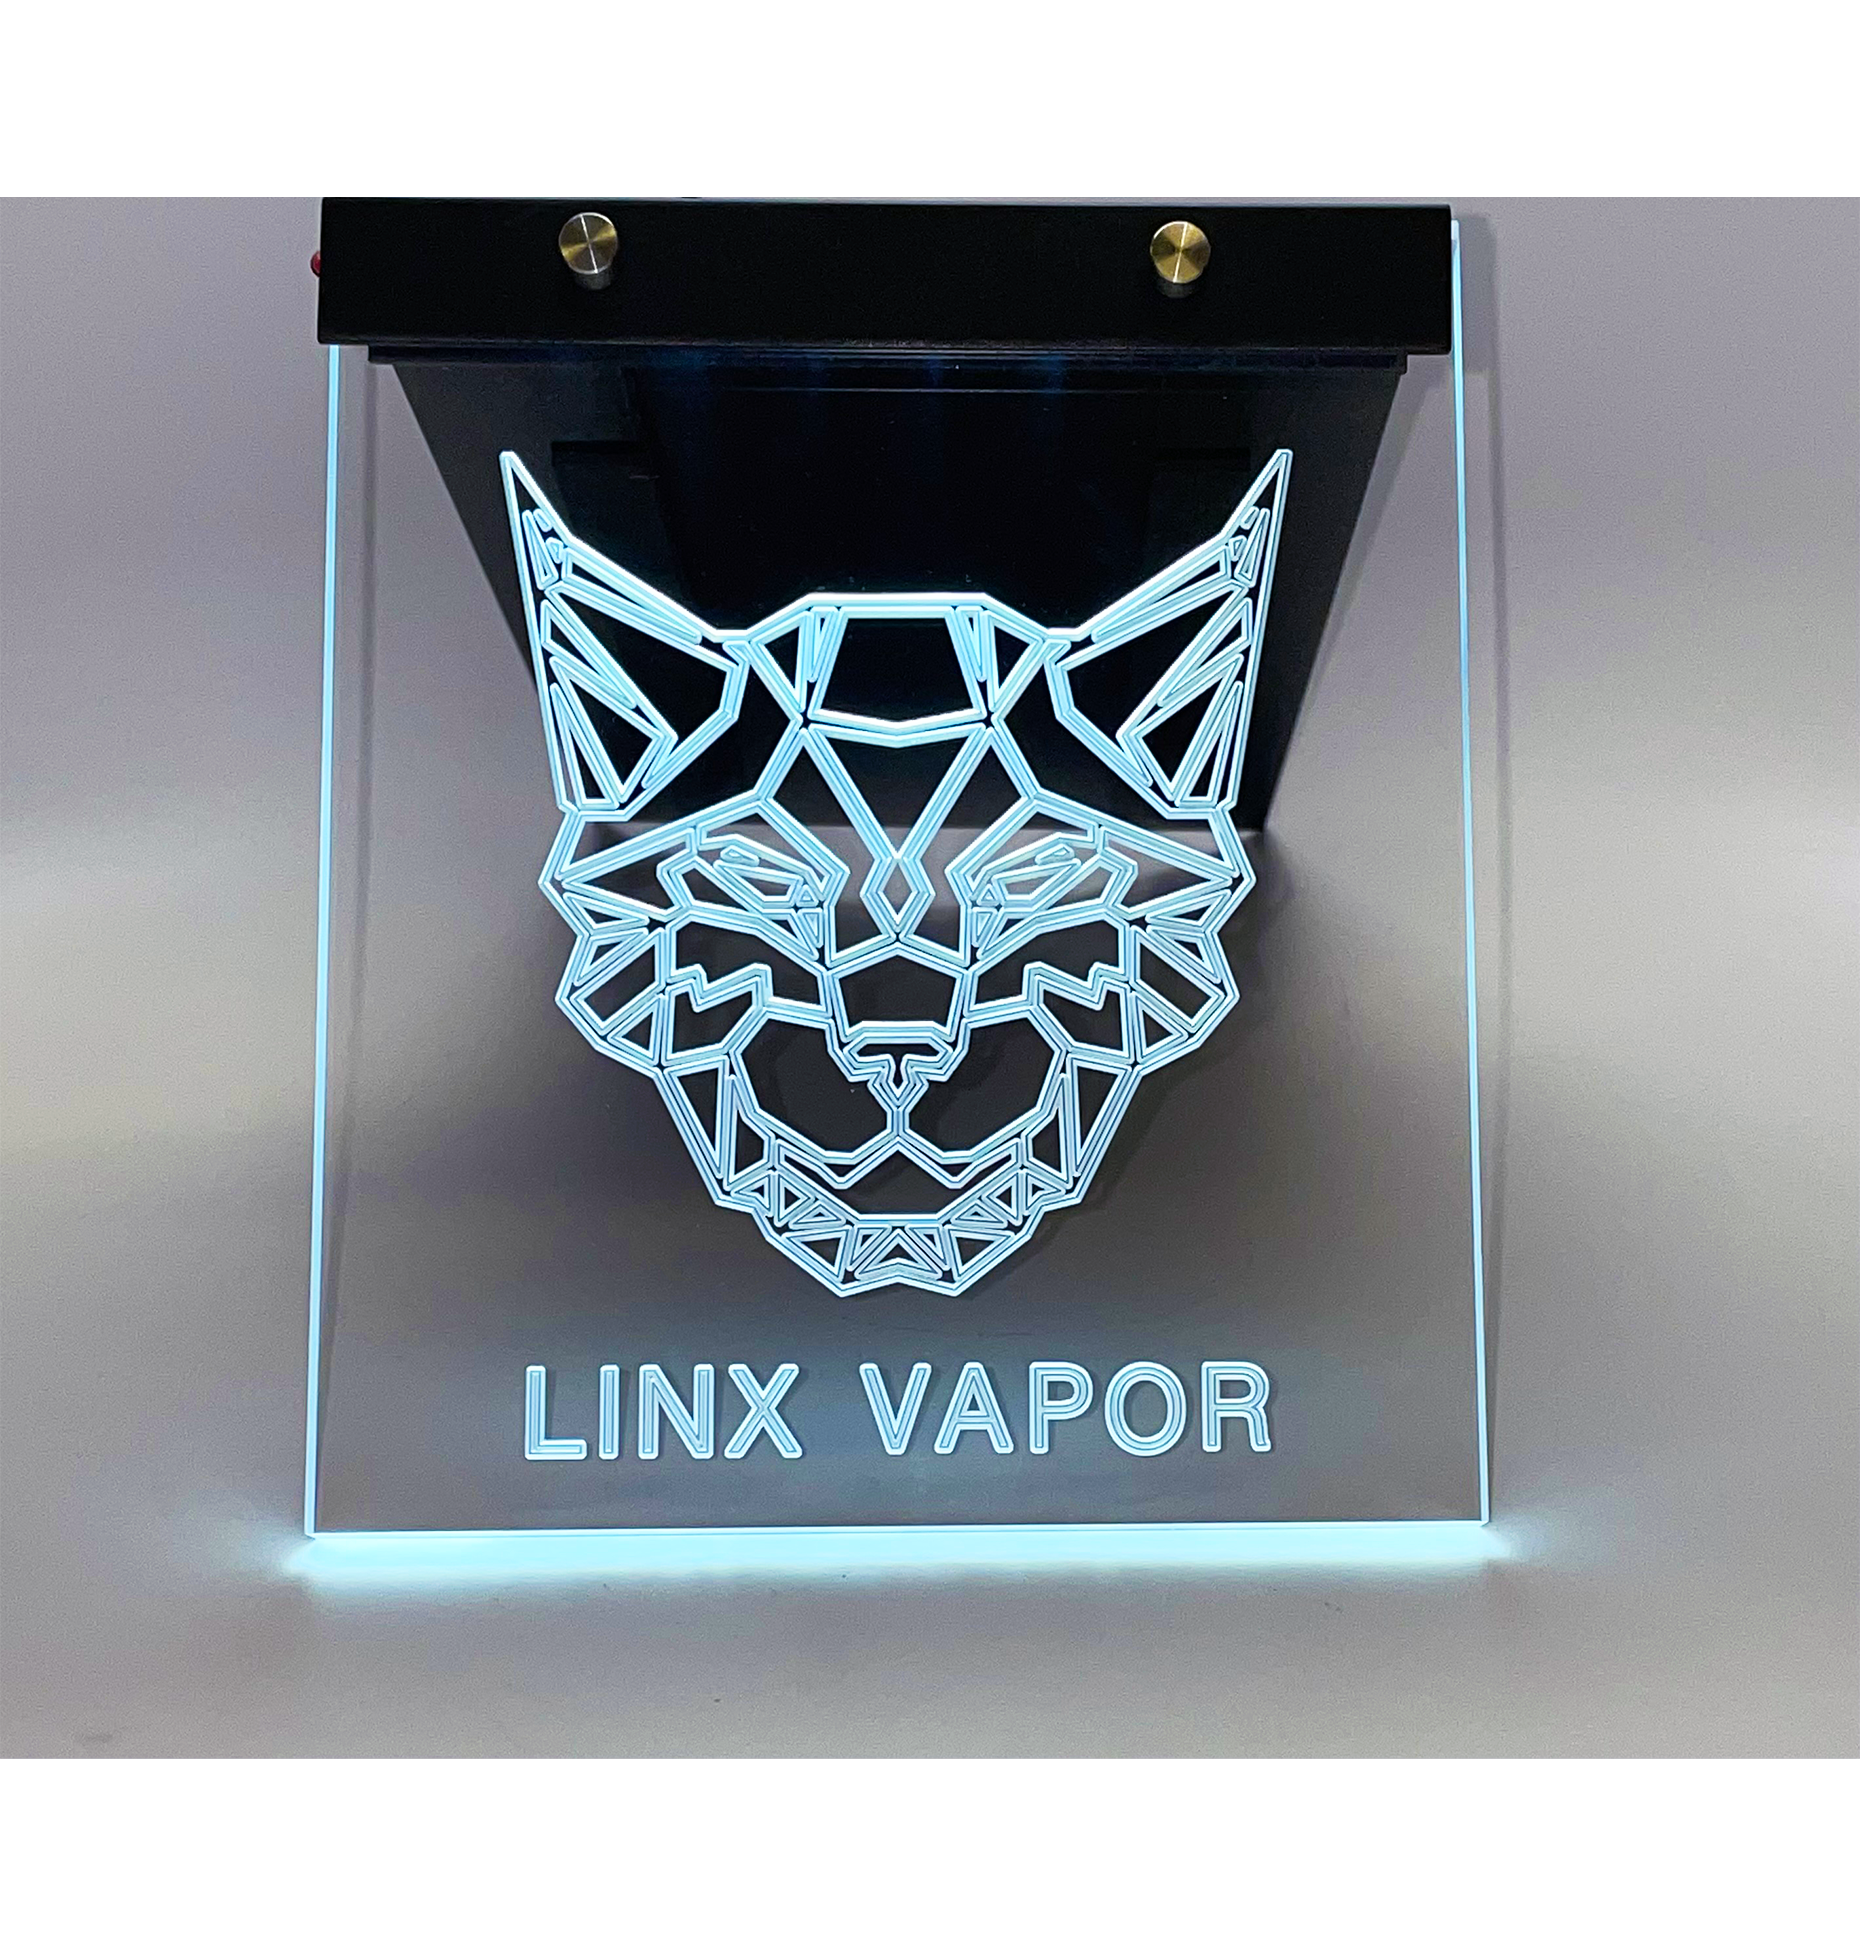 LINX VAPOR Illuminating Table Light